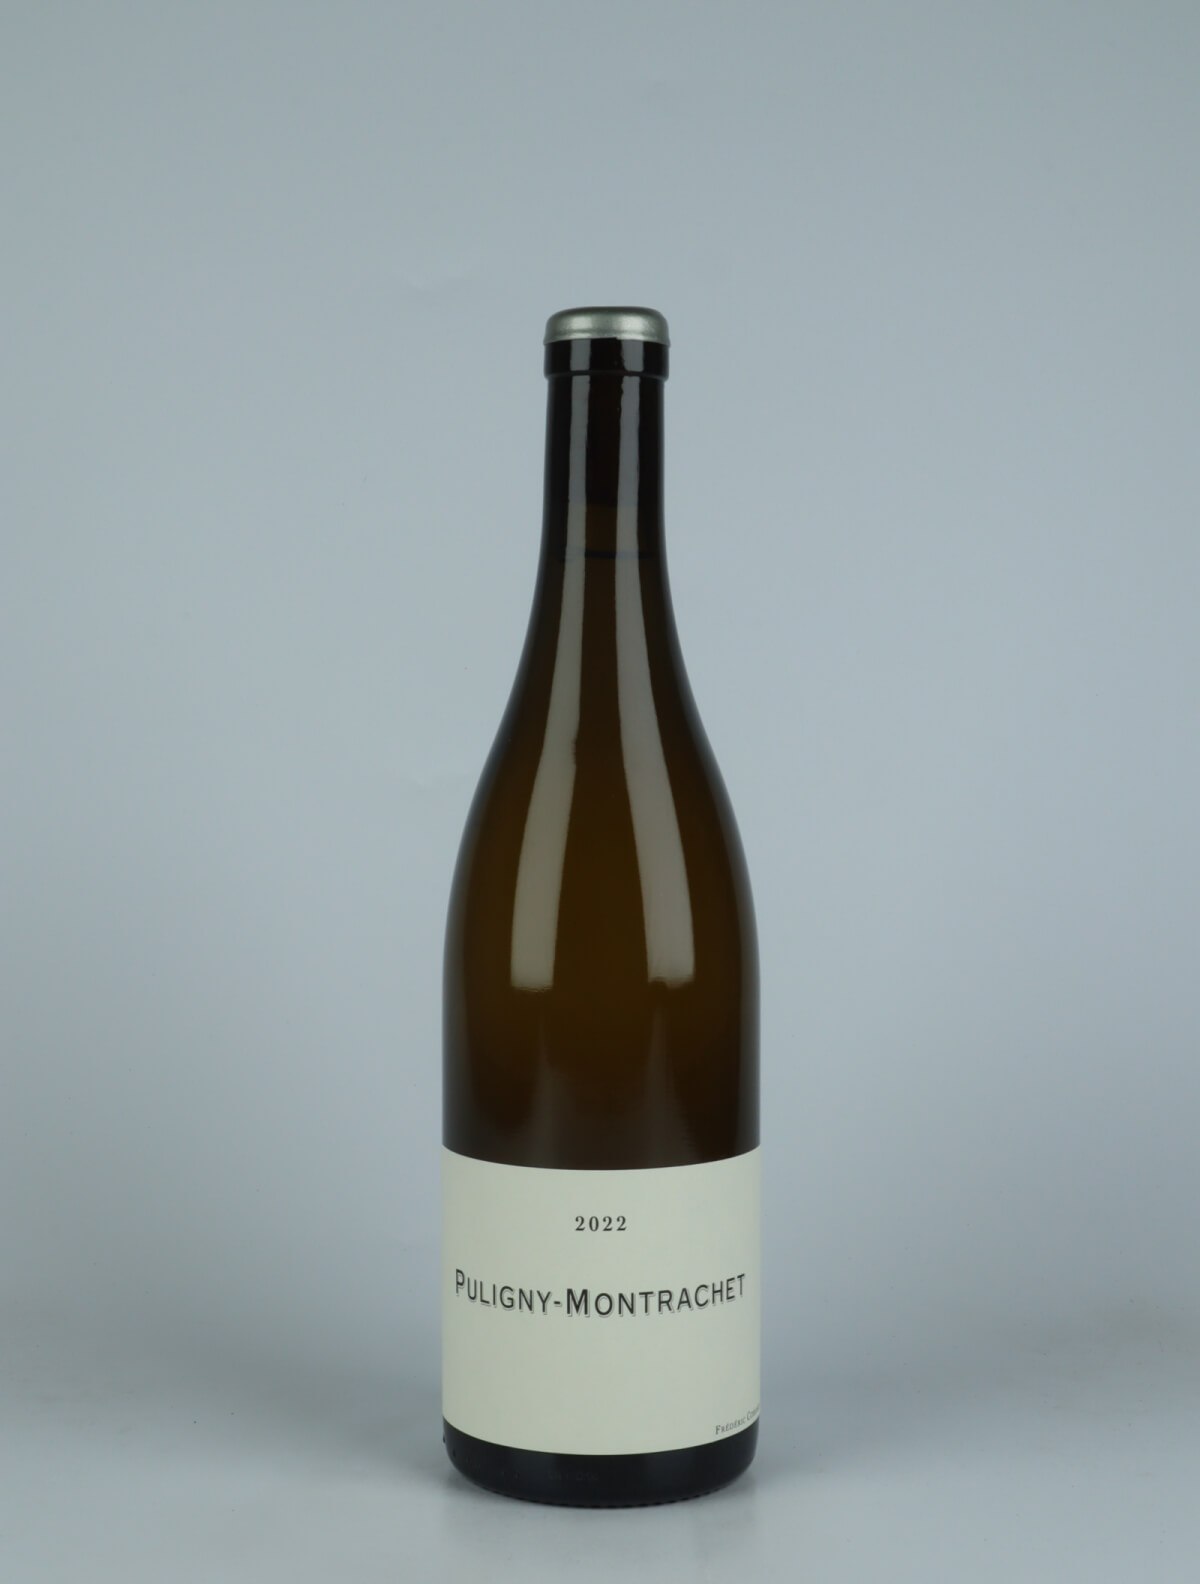 En flaske 2022 Puligny Montrachet Hvidvin fra Frédéric Cossard, Bourgogne i Frankrig